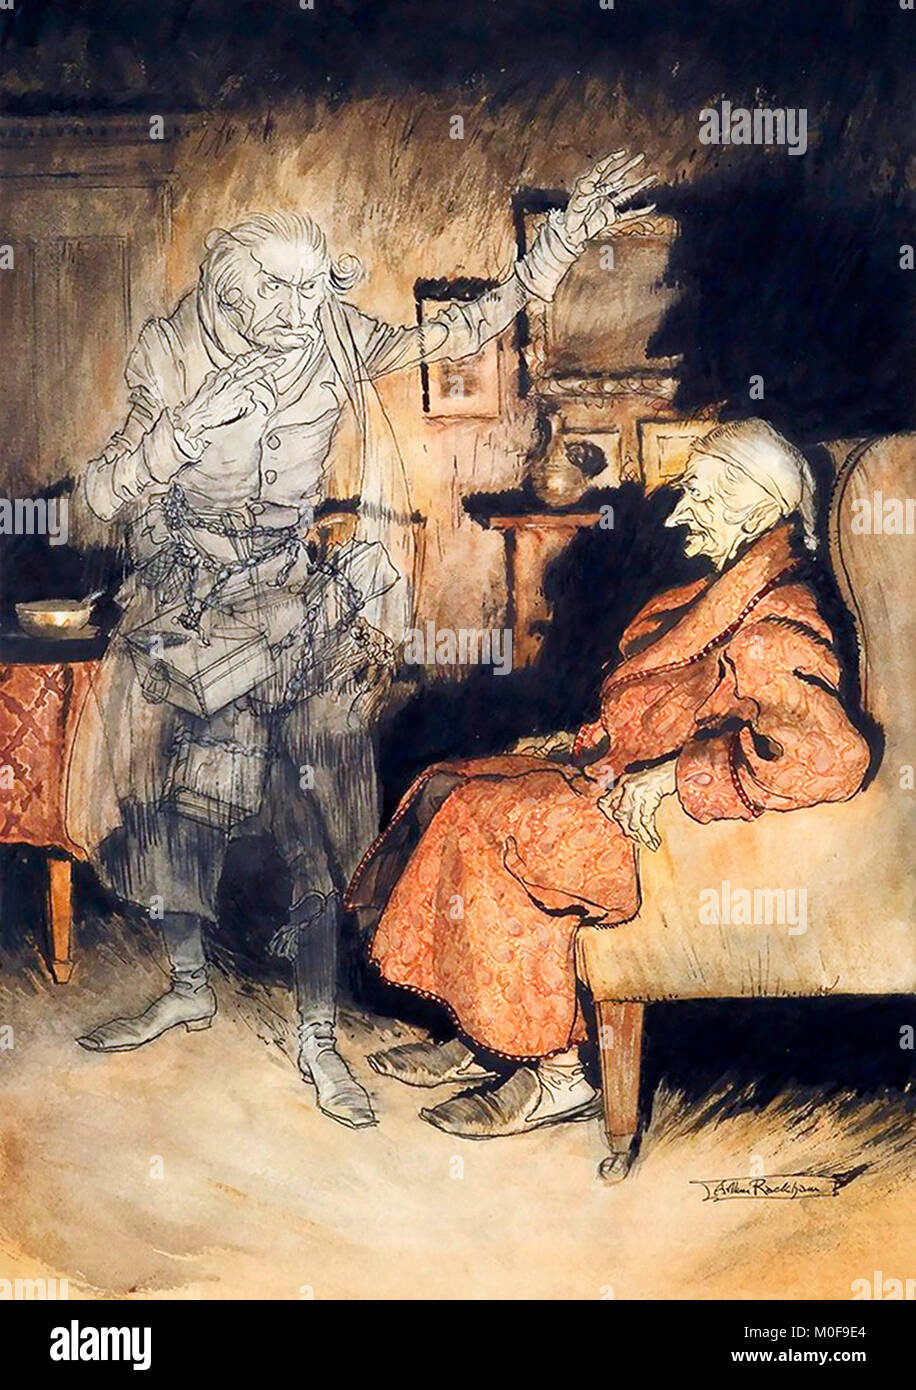 Scrooge und der Geist von Marley von Arthur Rackham, Feder, Tusche und Aquarell, von Dickens "A Christmas Carol", 1915 Stockfoto